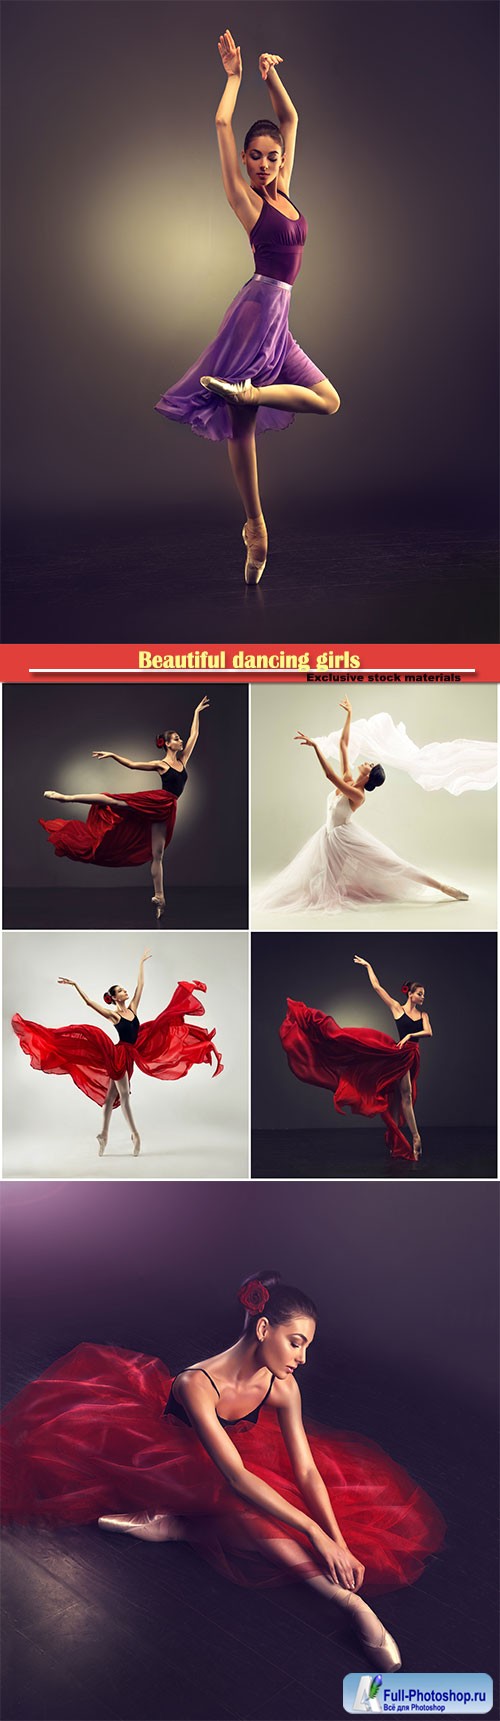 Beautiful dancing girls